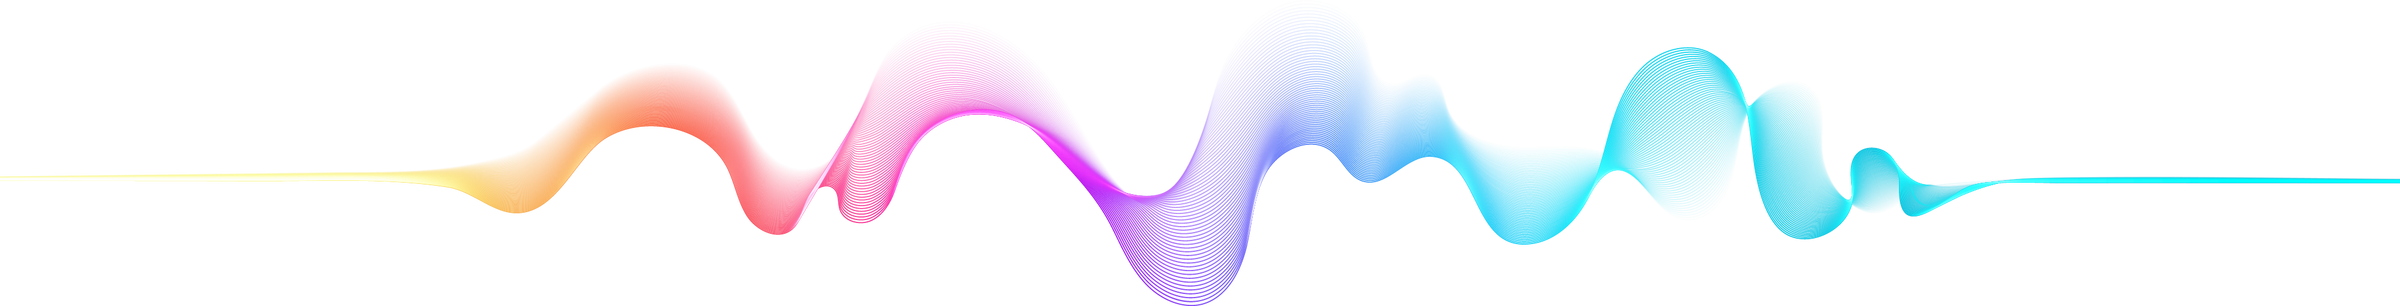 Sound Wave Illustration